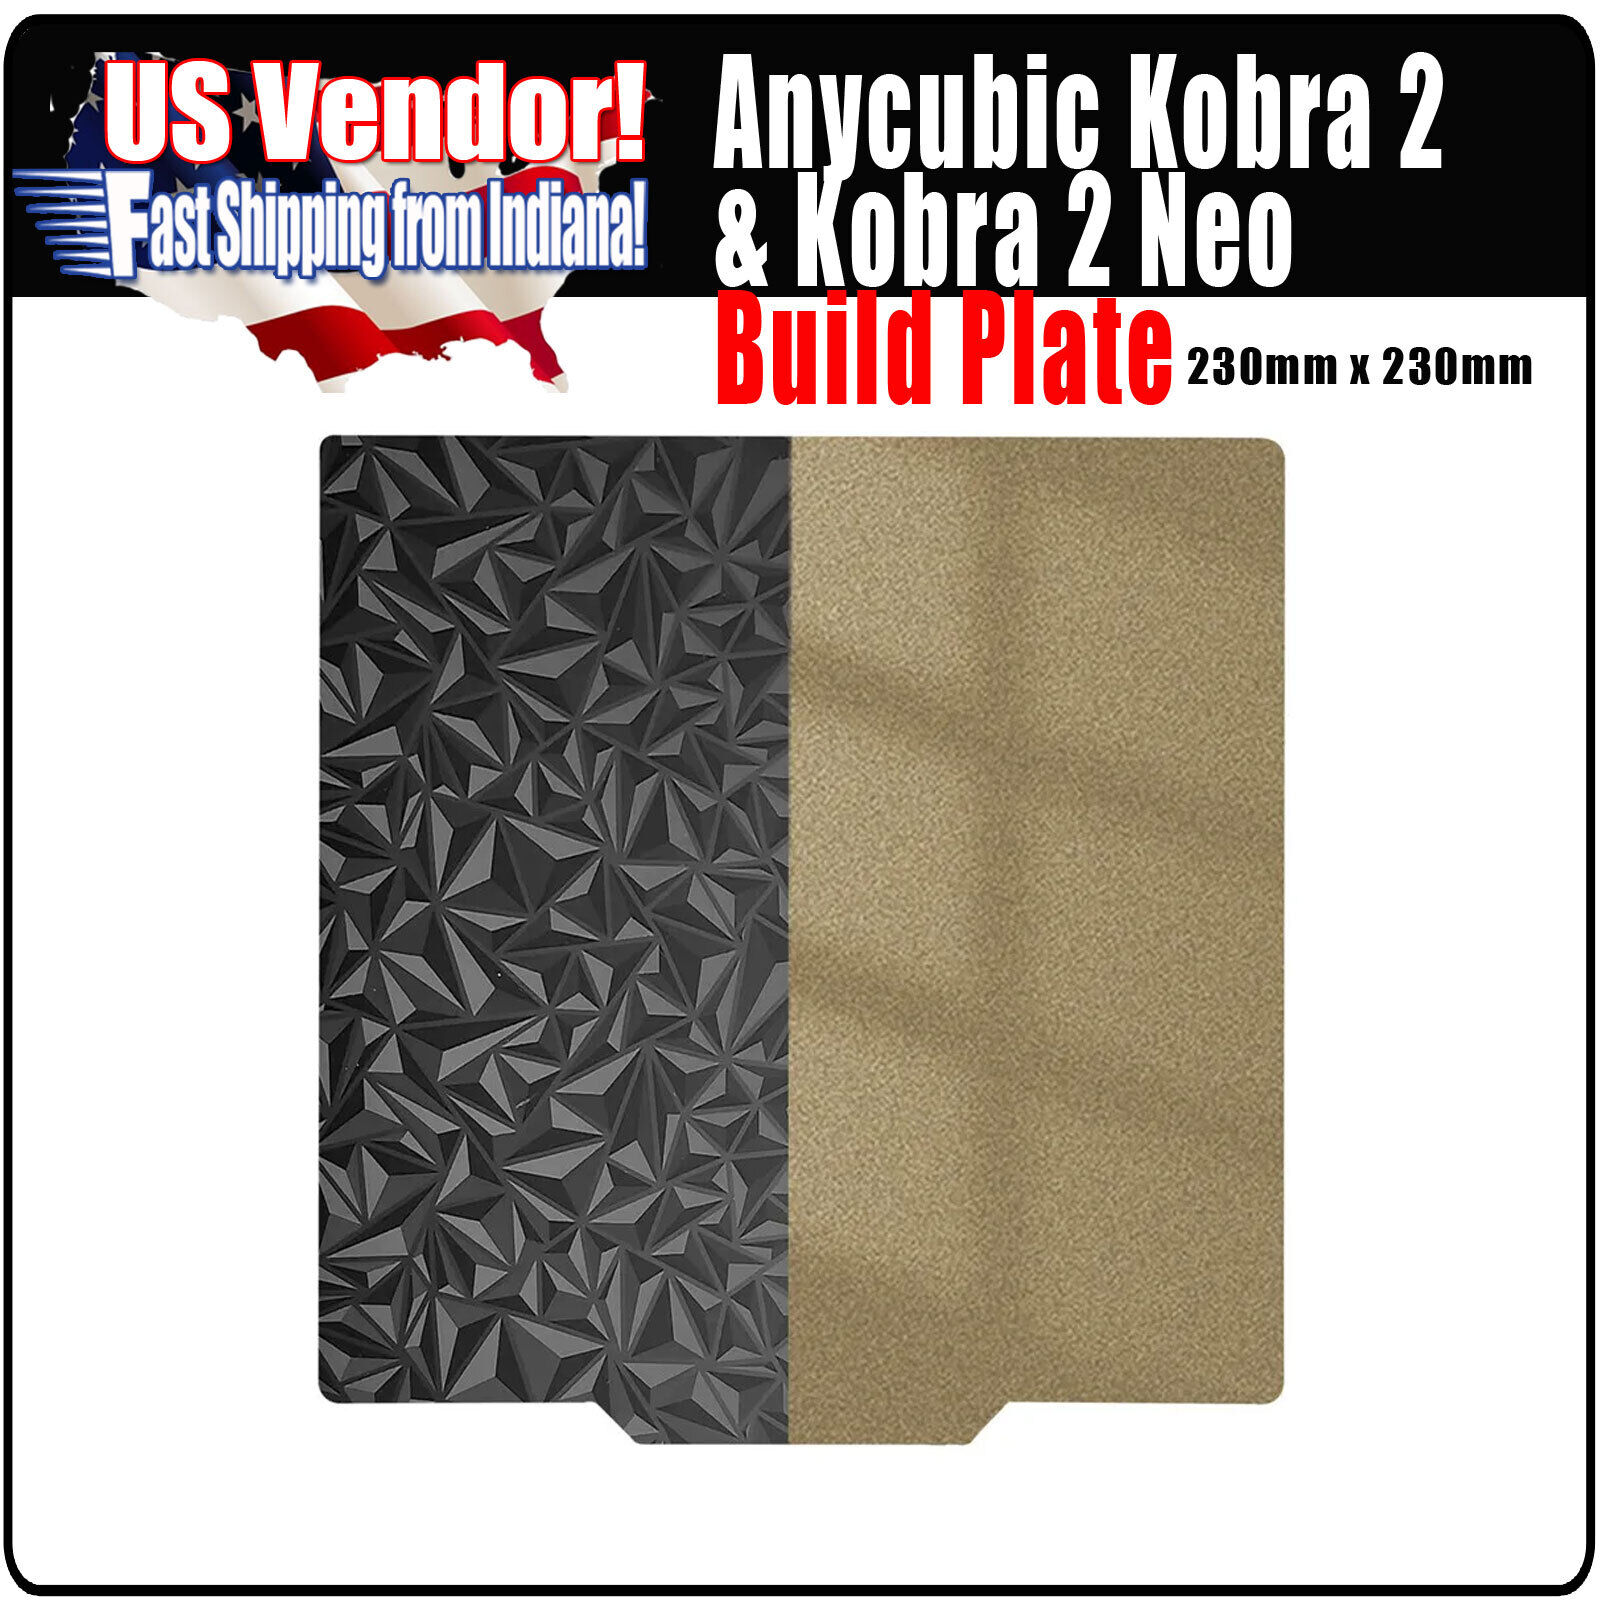 Build Plate ANYCUBIC KOBRA 2 /  KOBRA 2 NEO 230mm x 230mm Pei, Pey, Peo, Pet